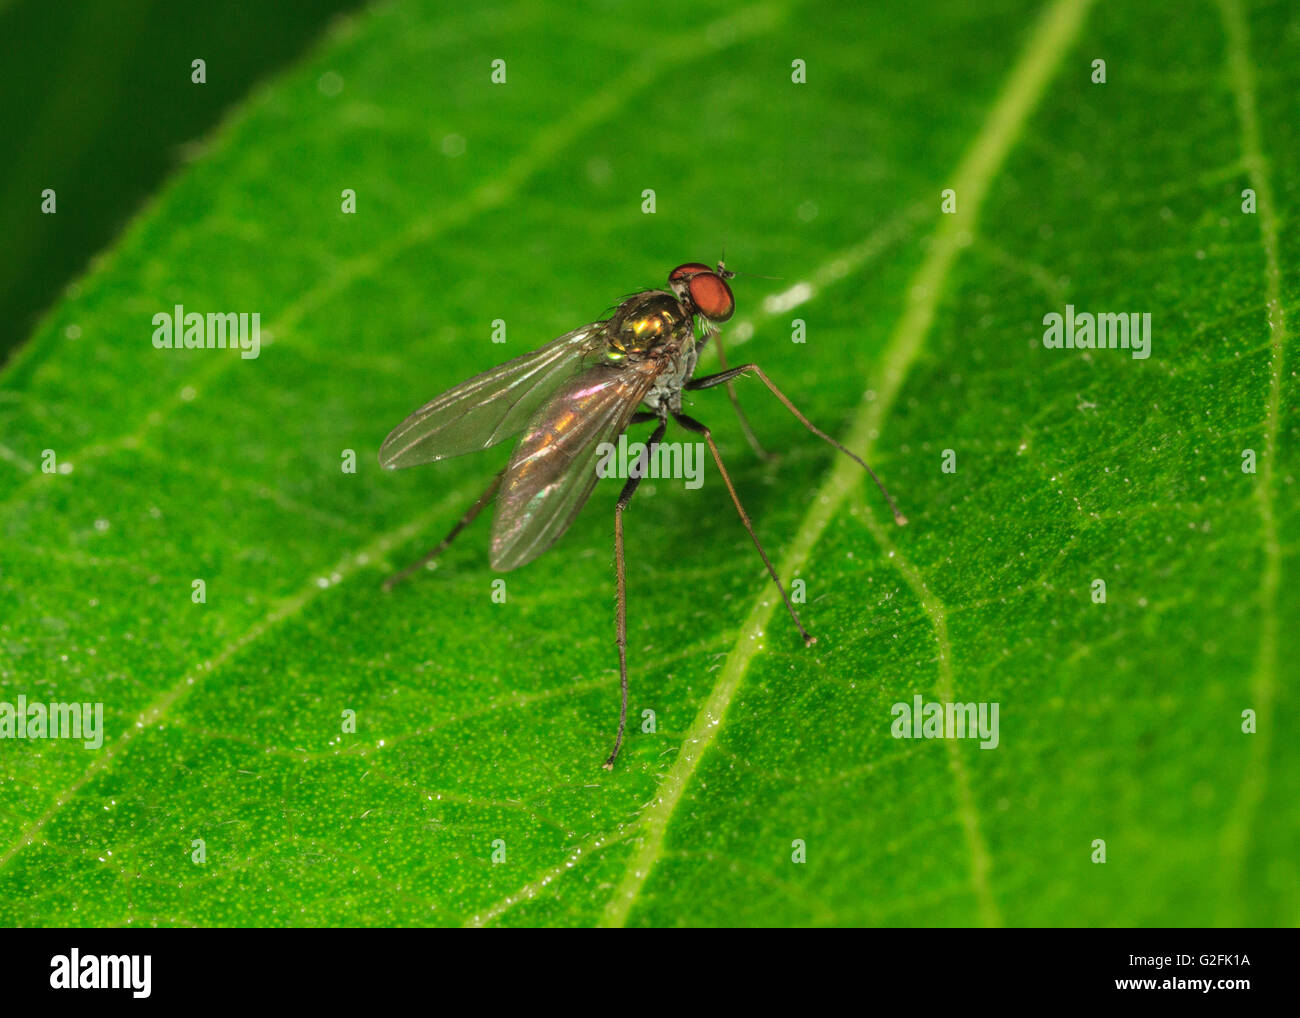 Long-legged fly (Condylostylus sp.) on leaf. Stock Photo